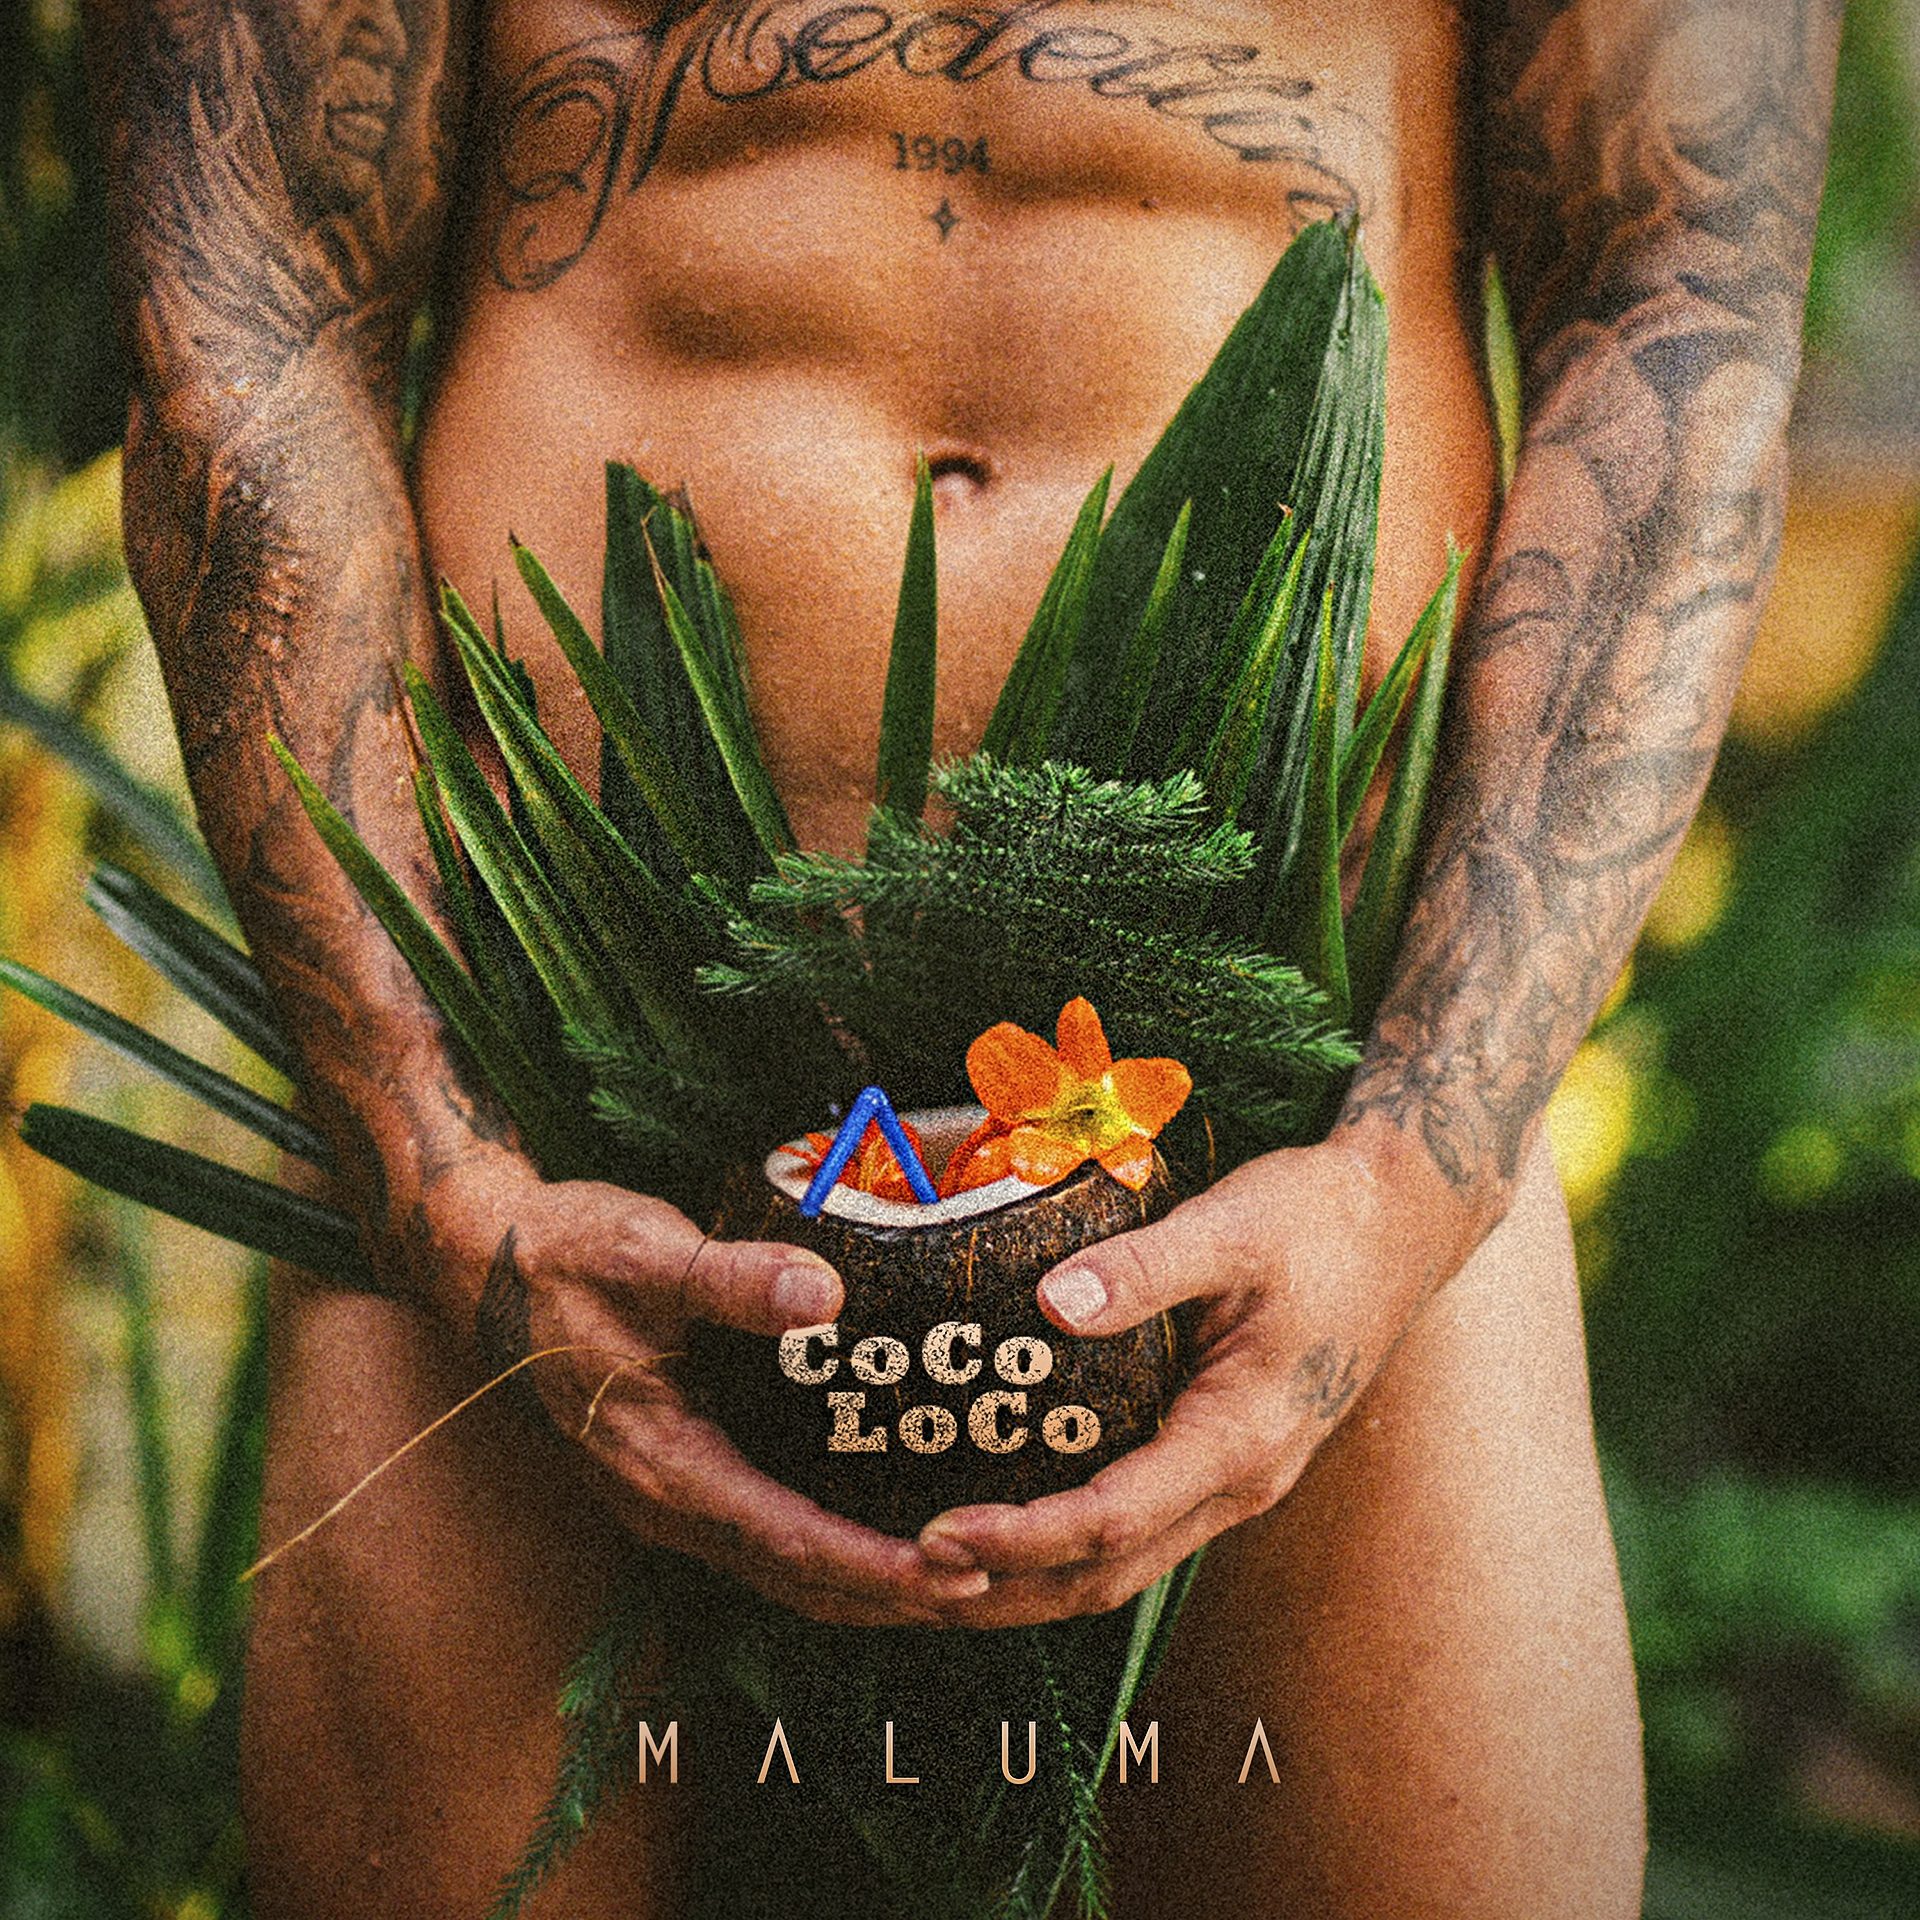 Maluma releases Coco Loco via 360 MAGAZINE.